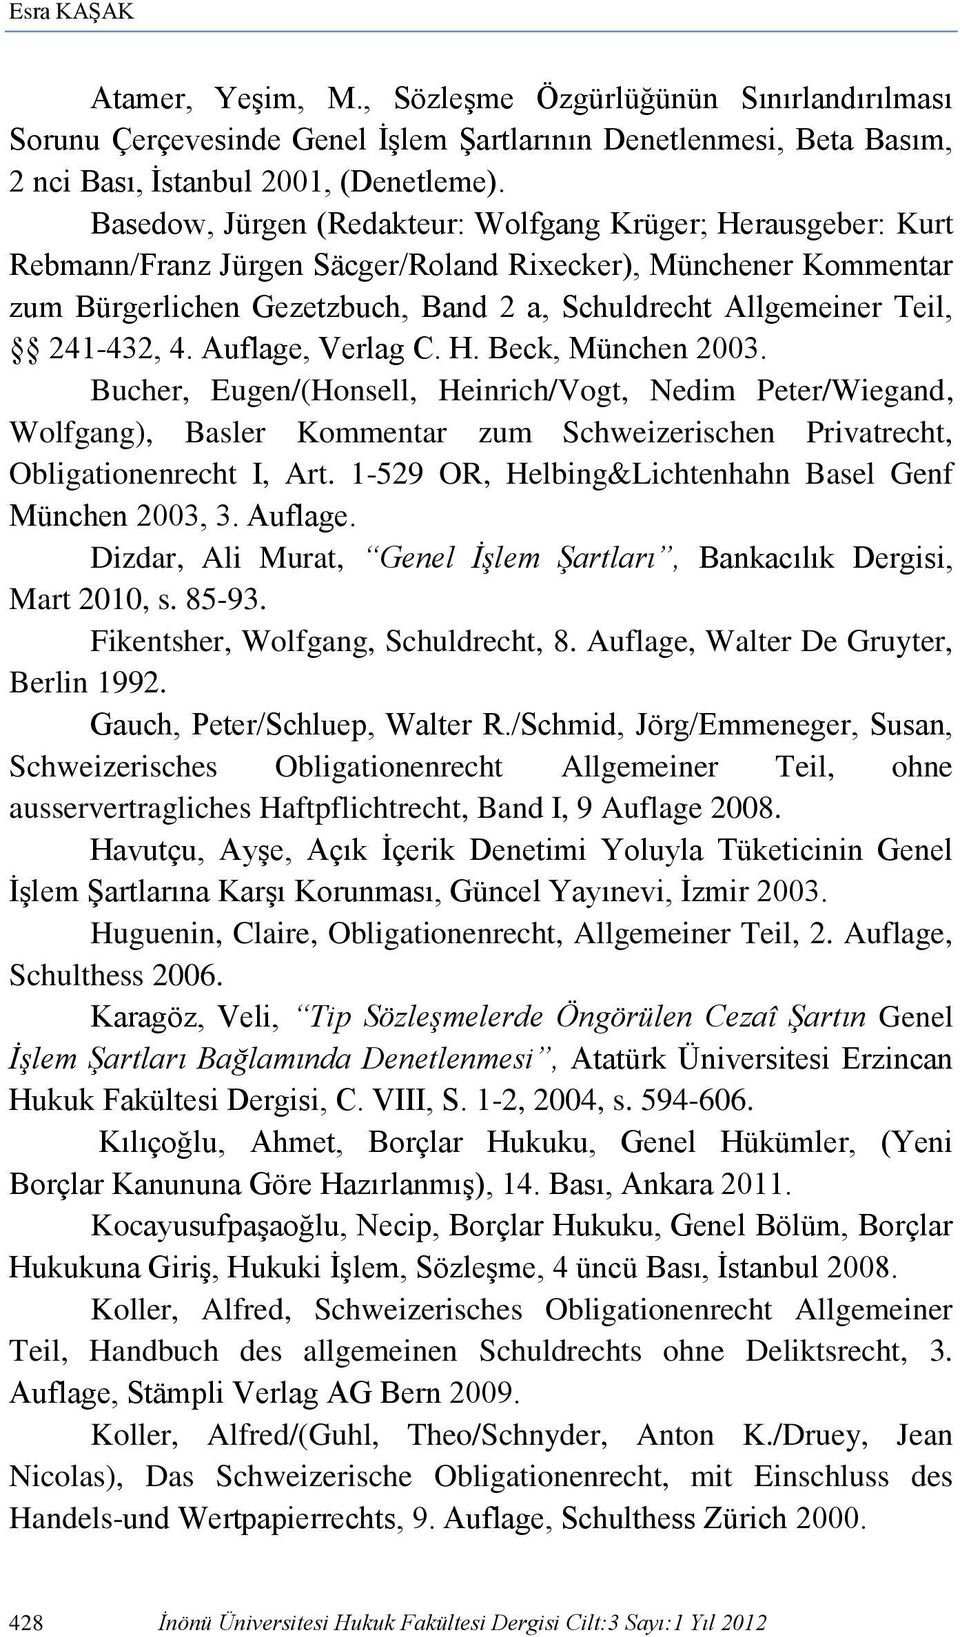 241-432, 4. Auflage, Verlag C. H. Beck, München 2003. Bucher, Eugen/(Honsell, Heinrich/Vogt, Nedim Peter/Wiegand, Wolfgang), Basler Kommentar zum Schweizerischen Privatrecht, Obligationenrecht I, Art.